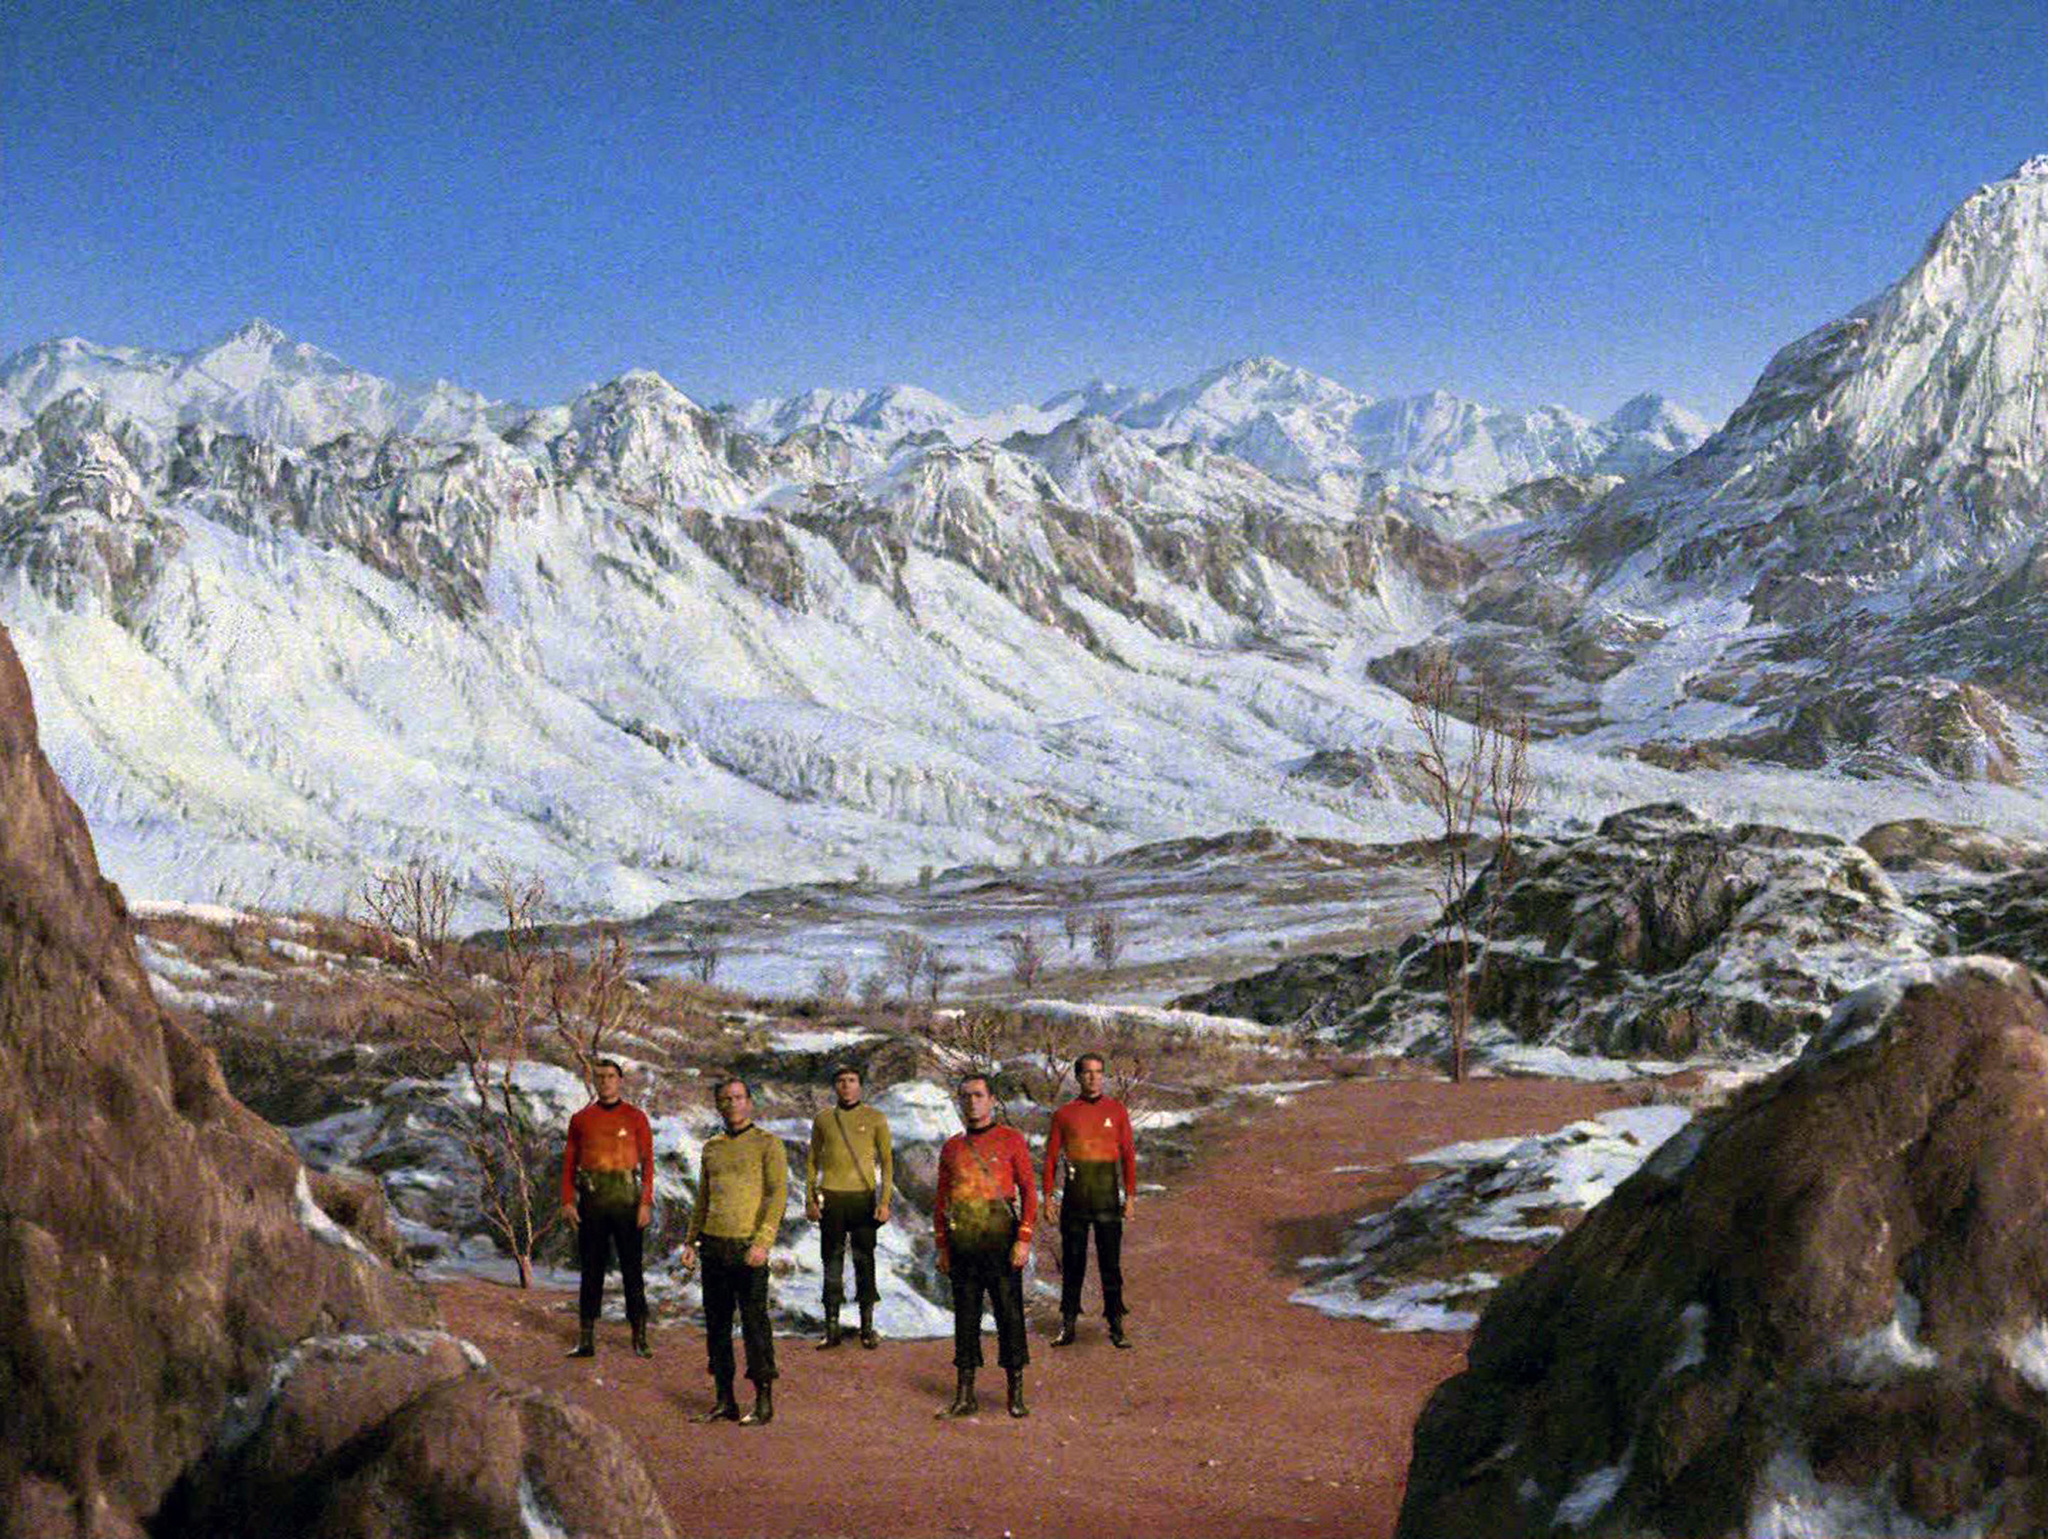 Still of Walter Koenig, William Shatner and James Doohan in Star Trek (1966)